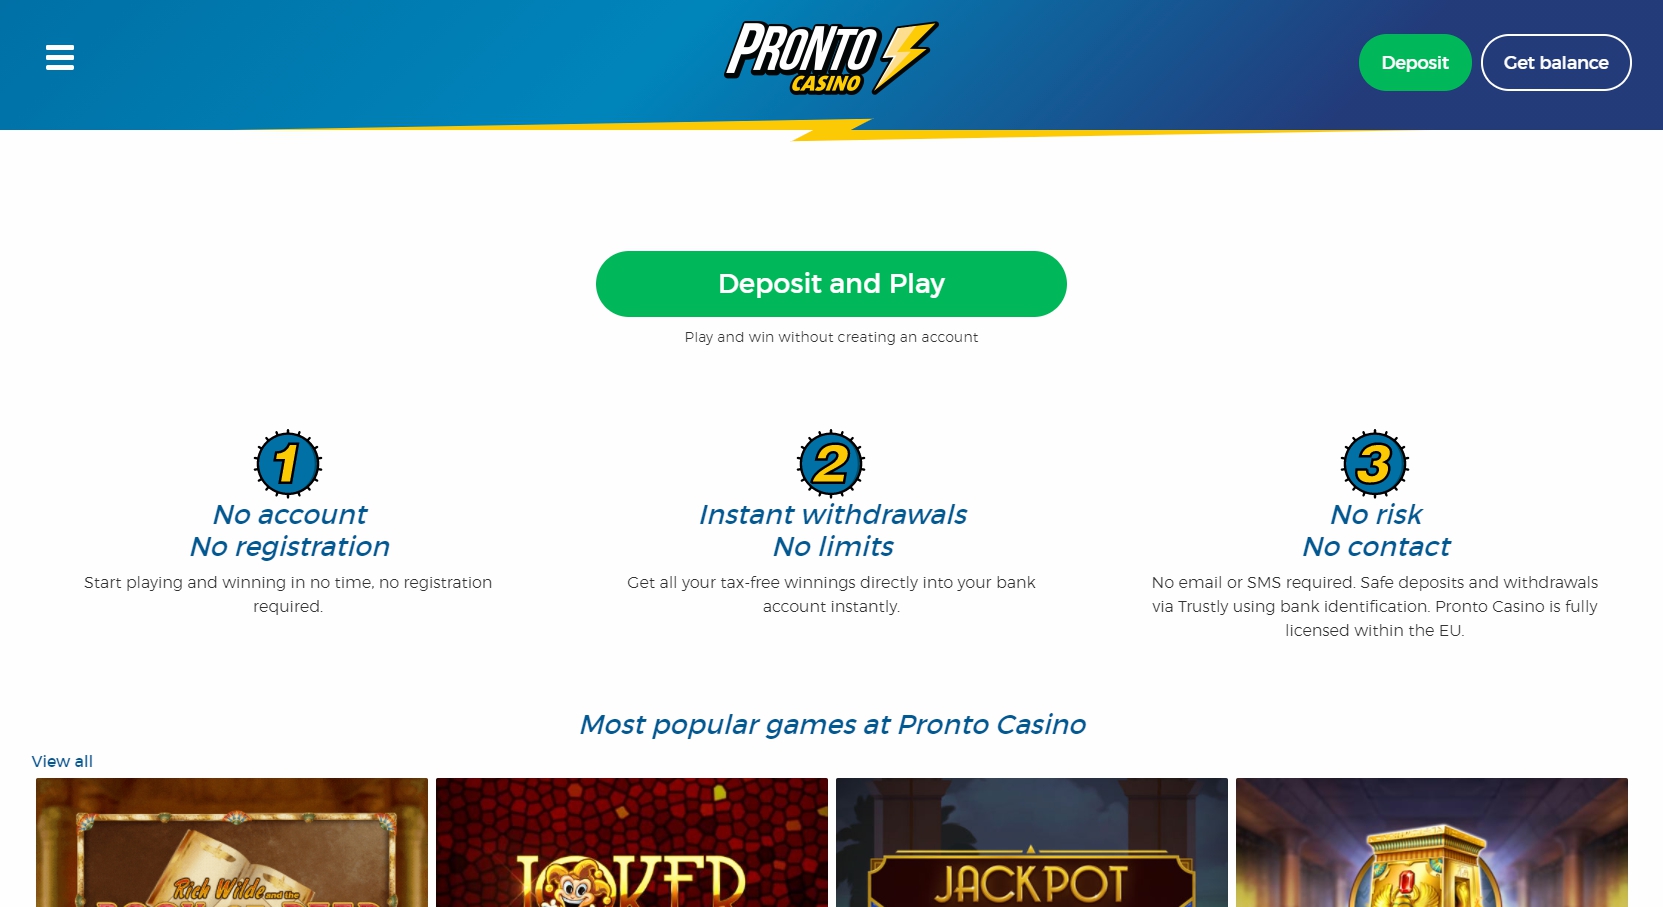 Pronto Casino Review